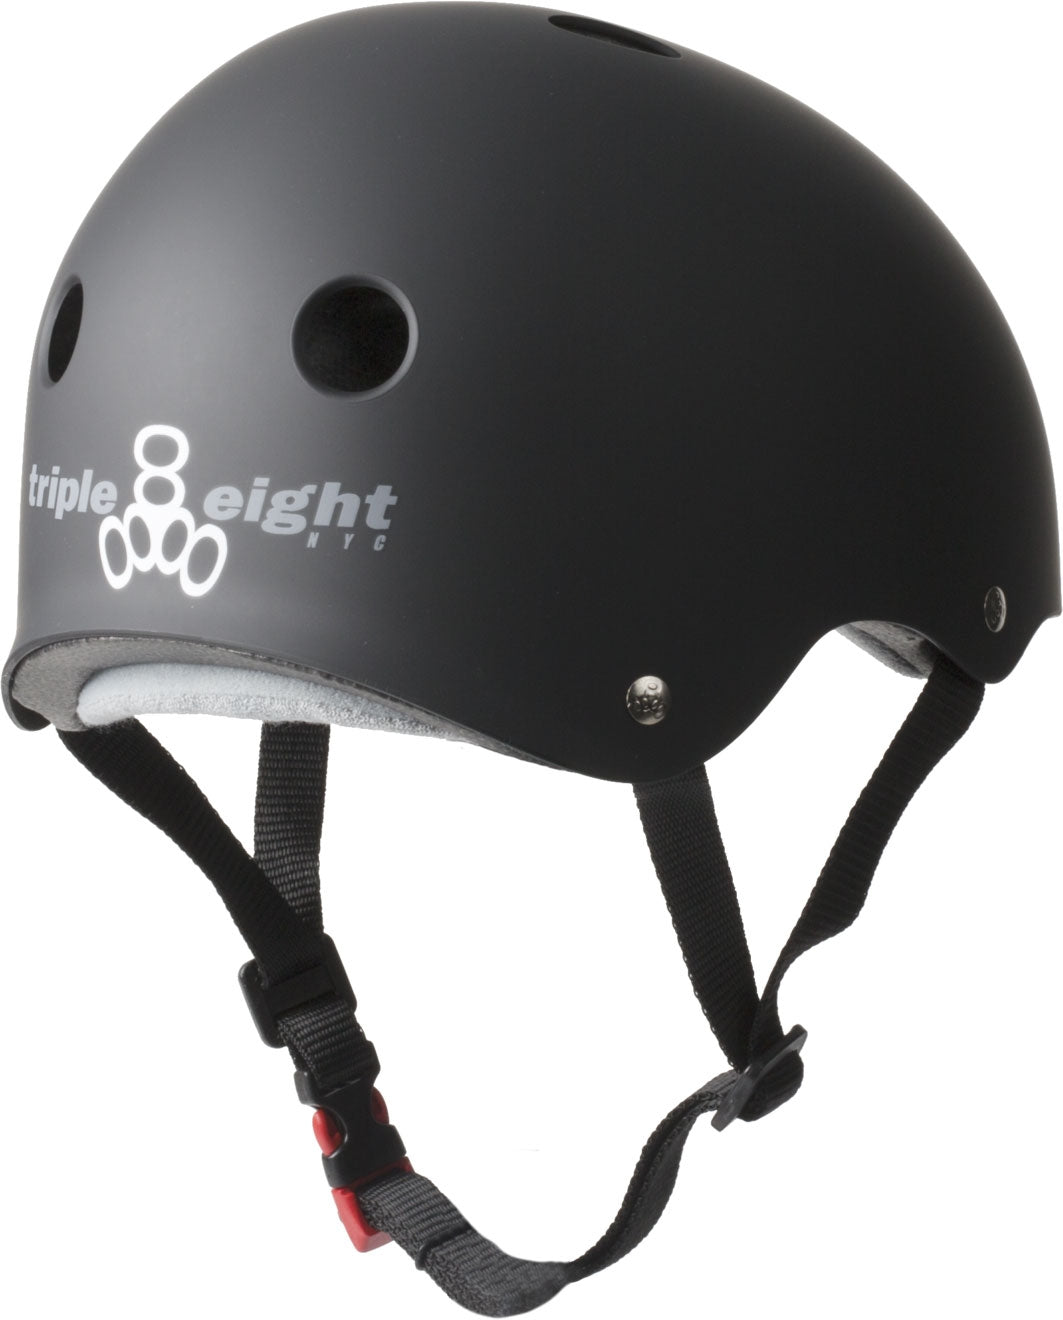 Triple 8 Certified Sweatsaver Skate Helmet - Black - Rear